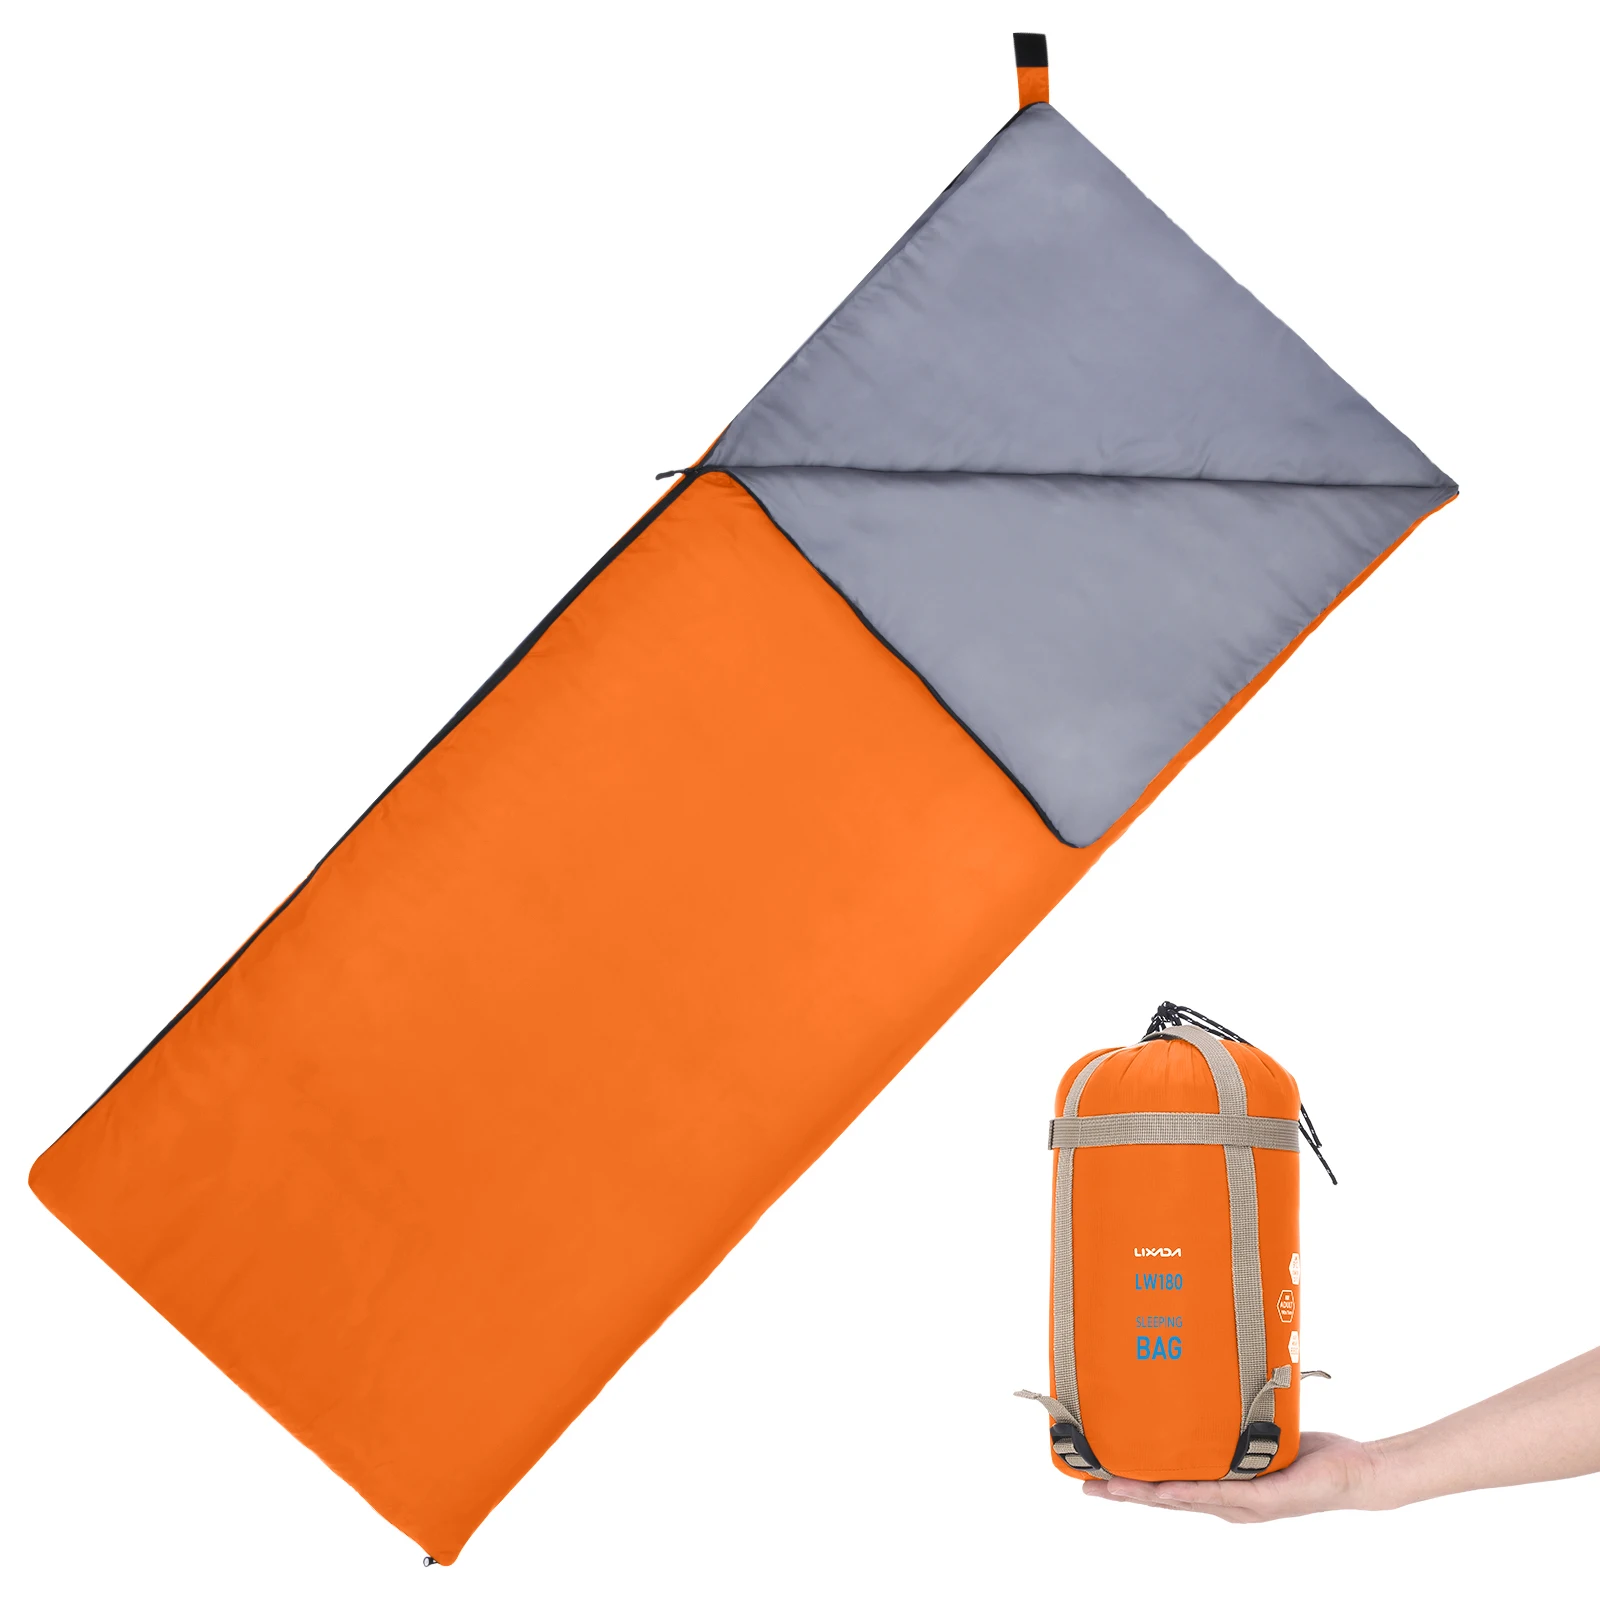 

LIXADA 190 * 75cm Outdoor Envelope Sleeping Bag Camping Travel Hiking Multifunction Ultra-light Sleeping Bag 680g